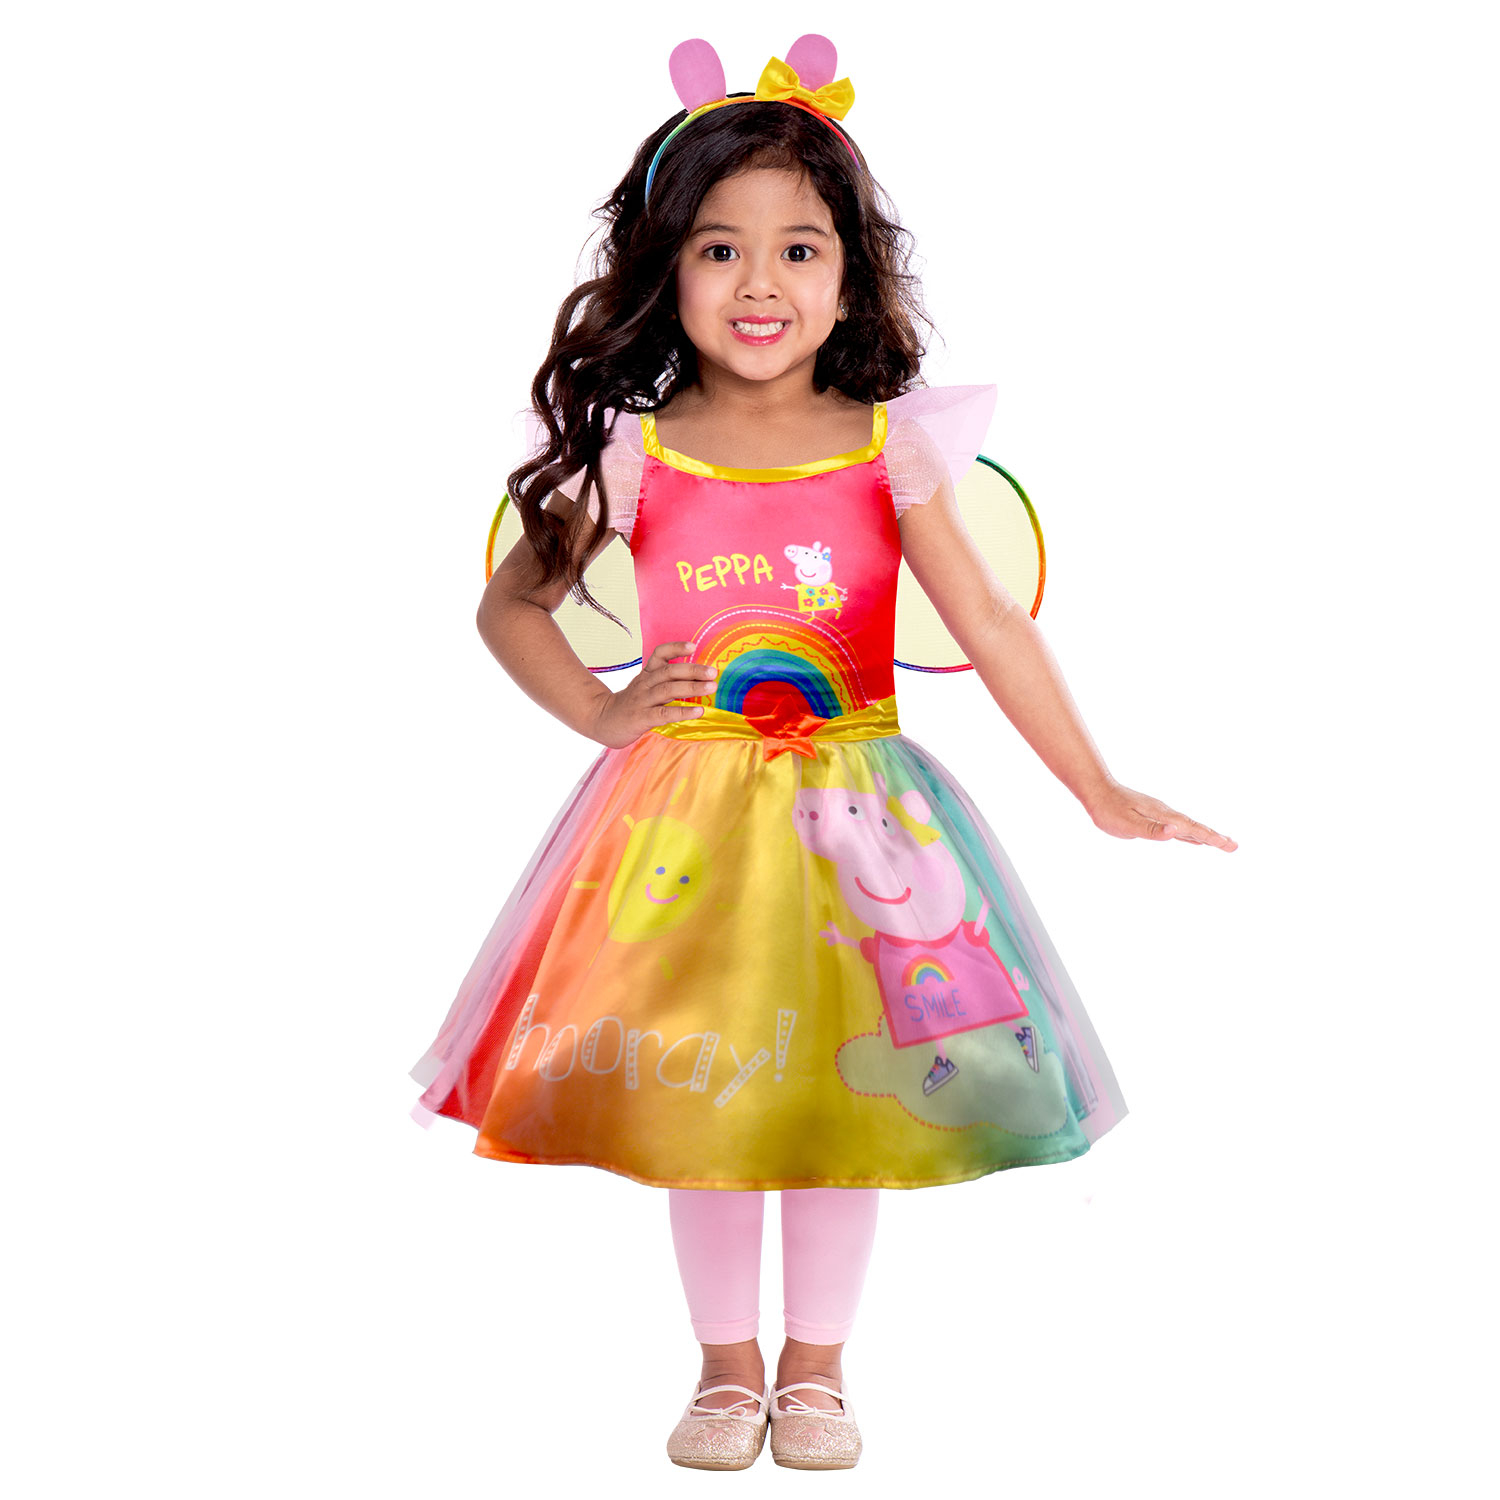 Peppa gris rainbow kjole 2-3 år